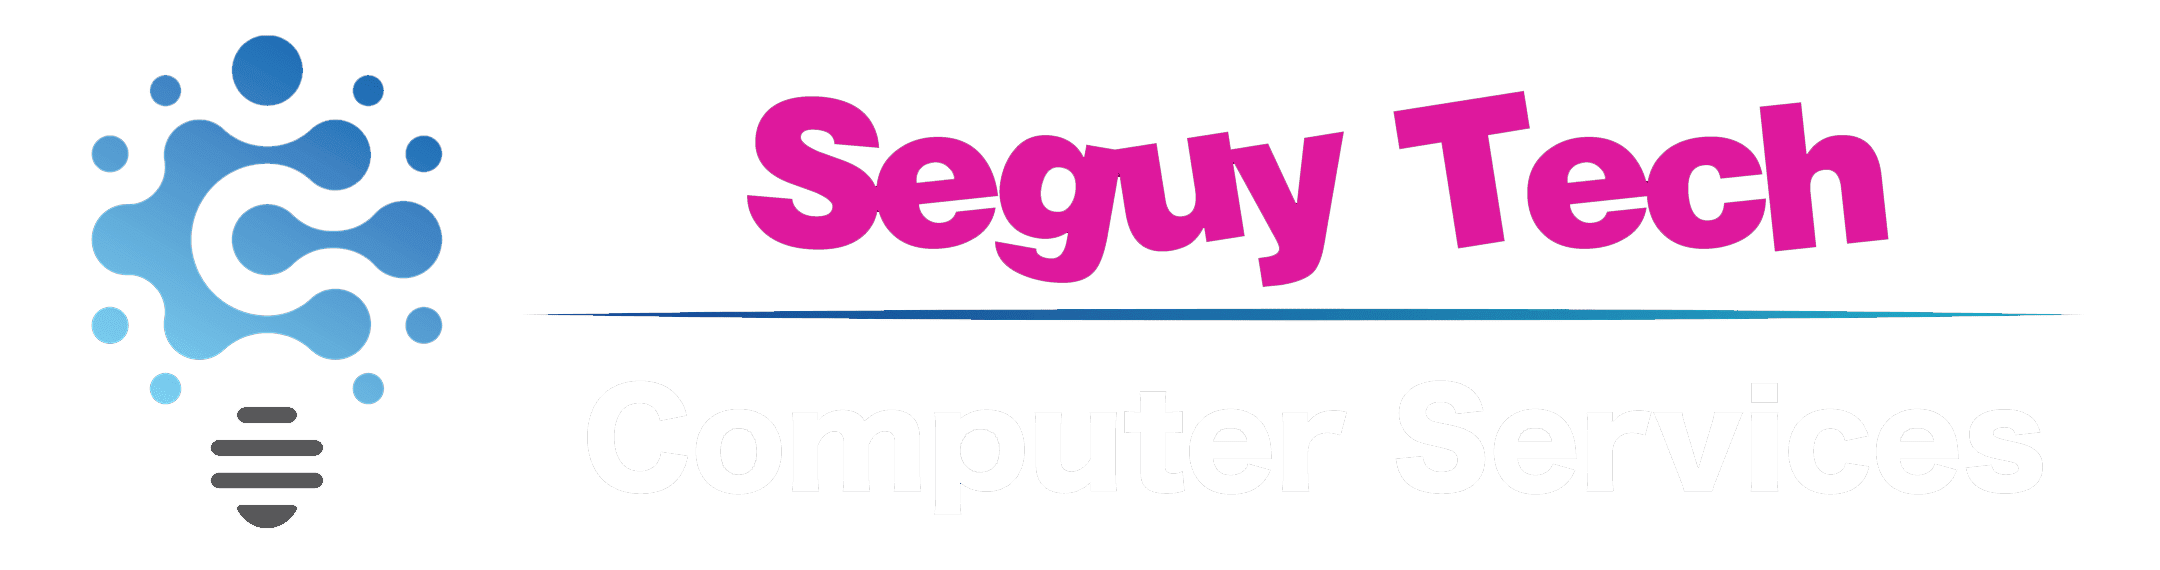 Seguy Tech Computer Services